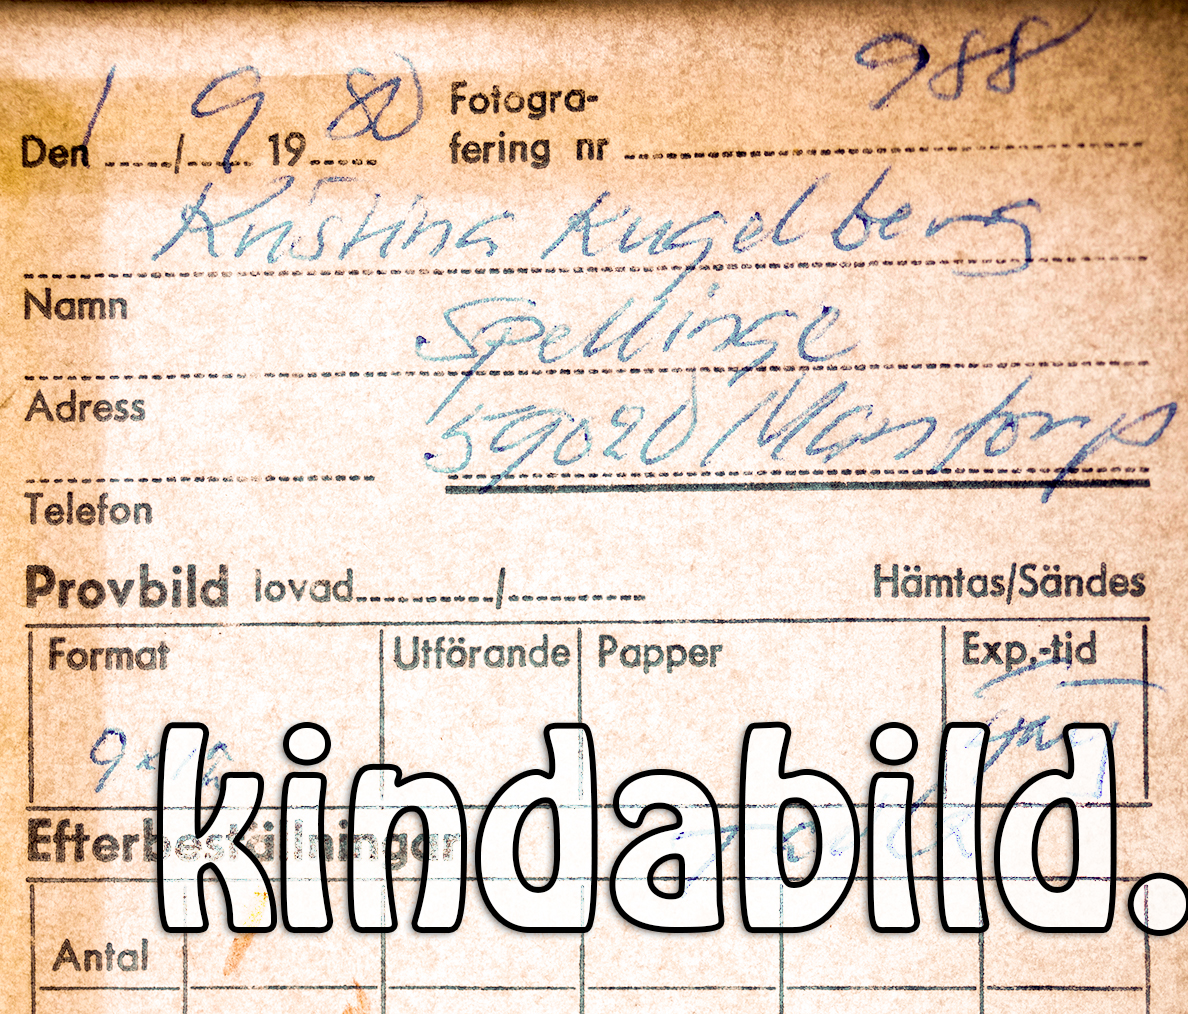 Kristina Kugelberg Spellinge 590 20 Mantorp
Nyckelord: Kugelberg Mantorp